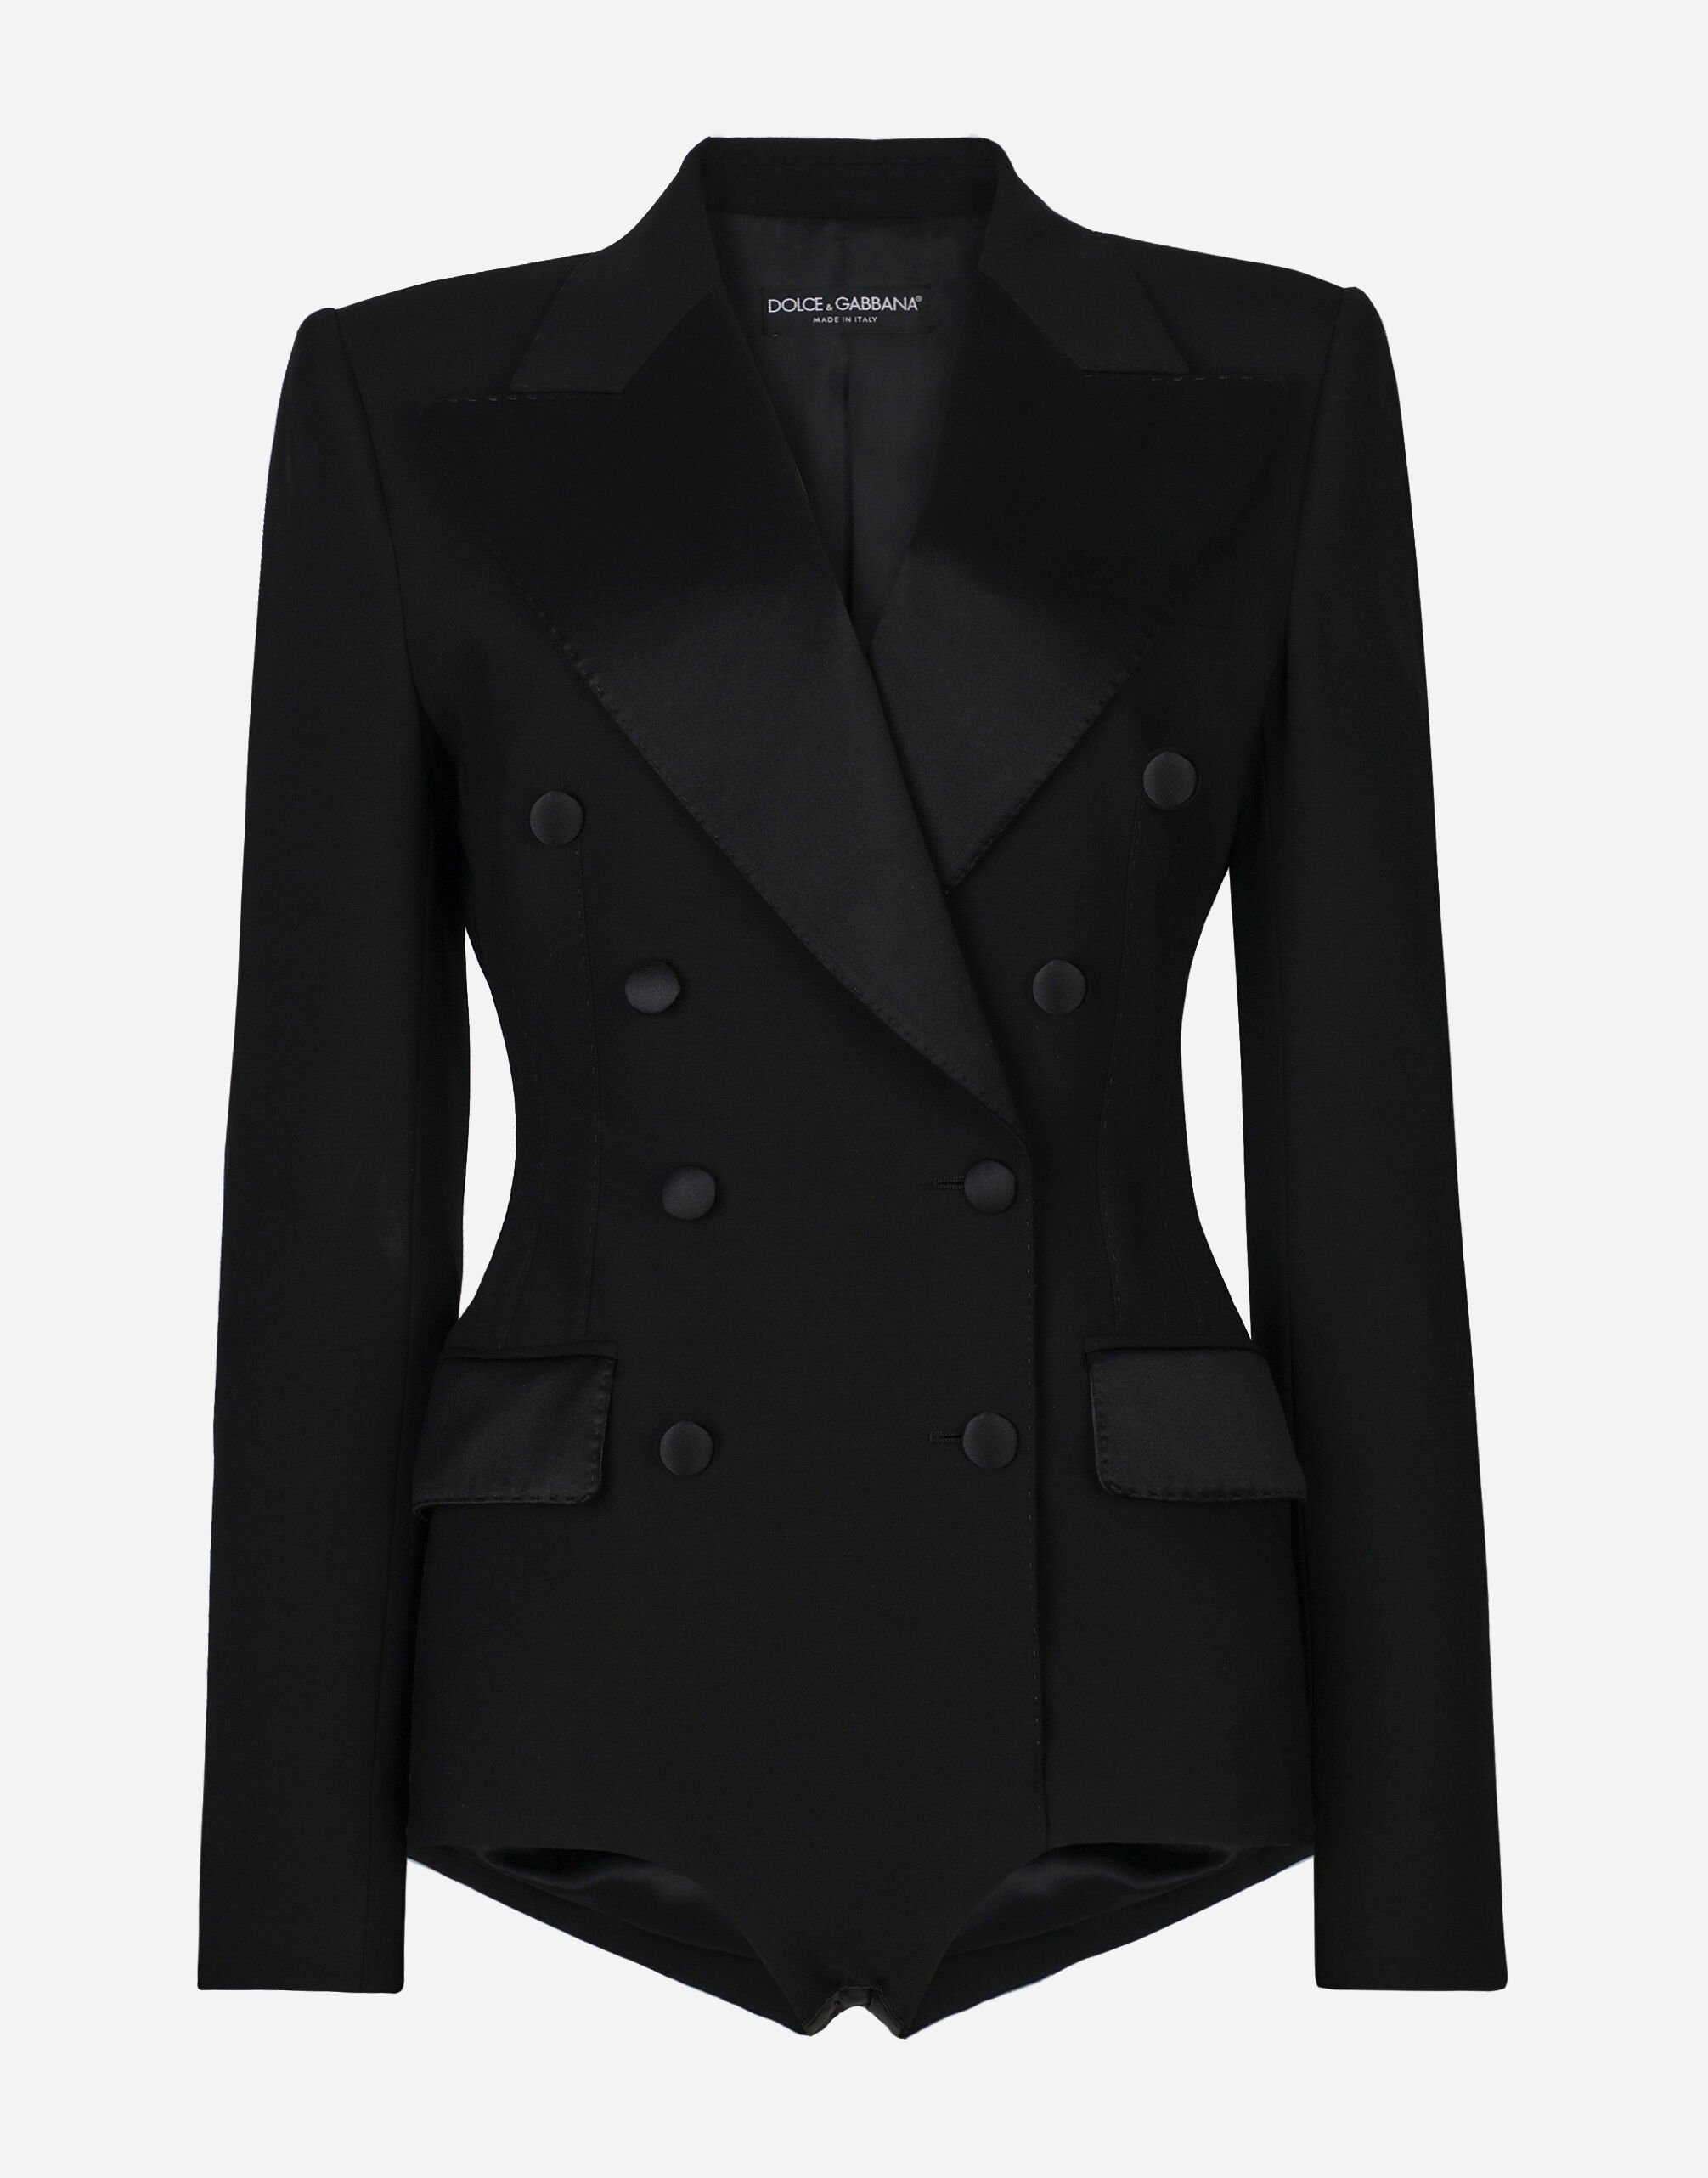 Dolce&Gabbana 더블 브레스티드 턱시도 재킷 보디슈트 멀티 컬러 BB5970AR441